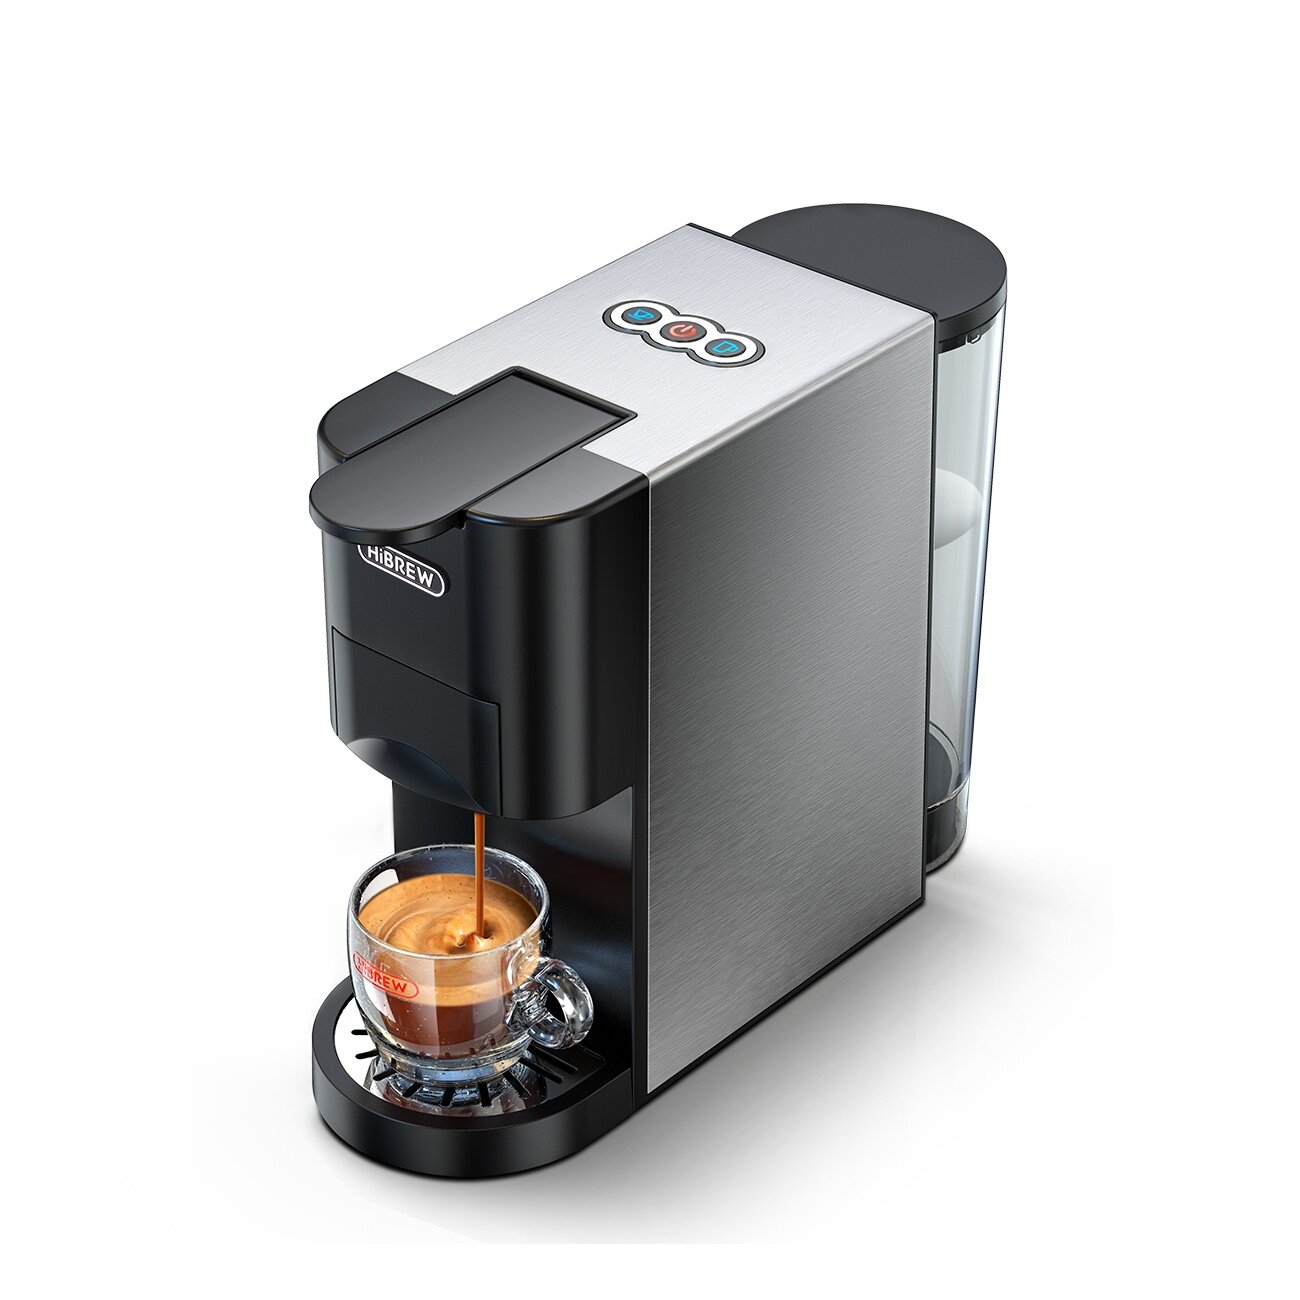 Ekspres do kawy HiBREW Coffee Machine 4in1 z EU za $90.99 / ~392zł